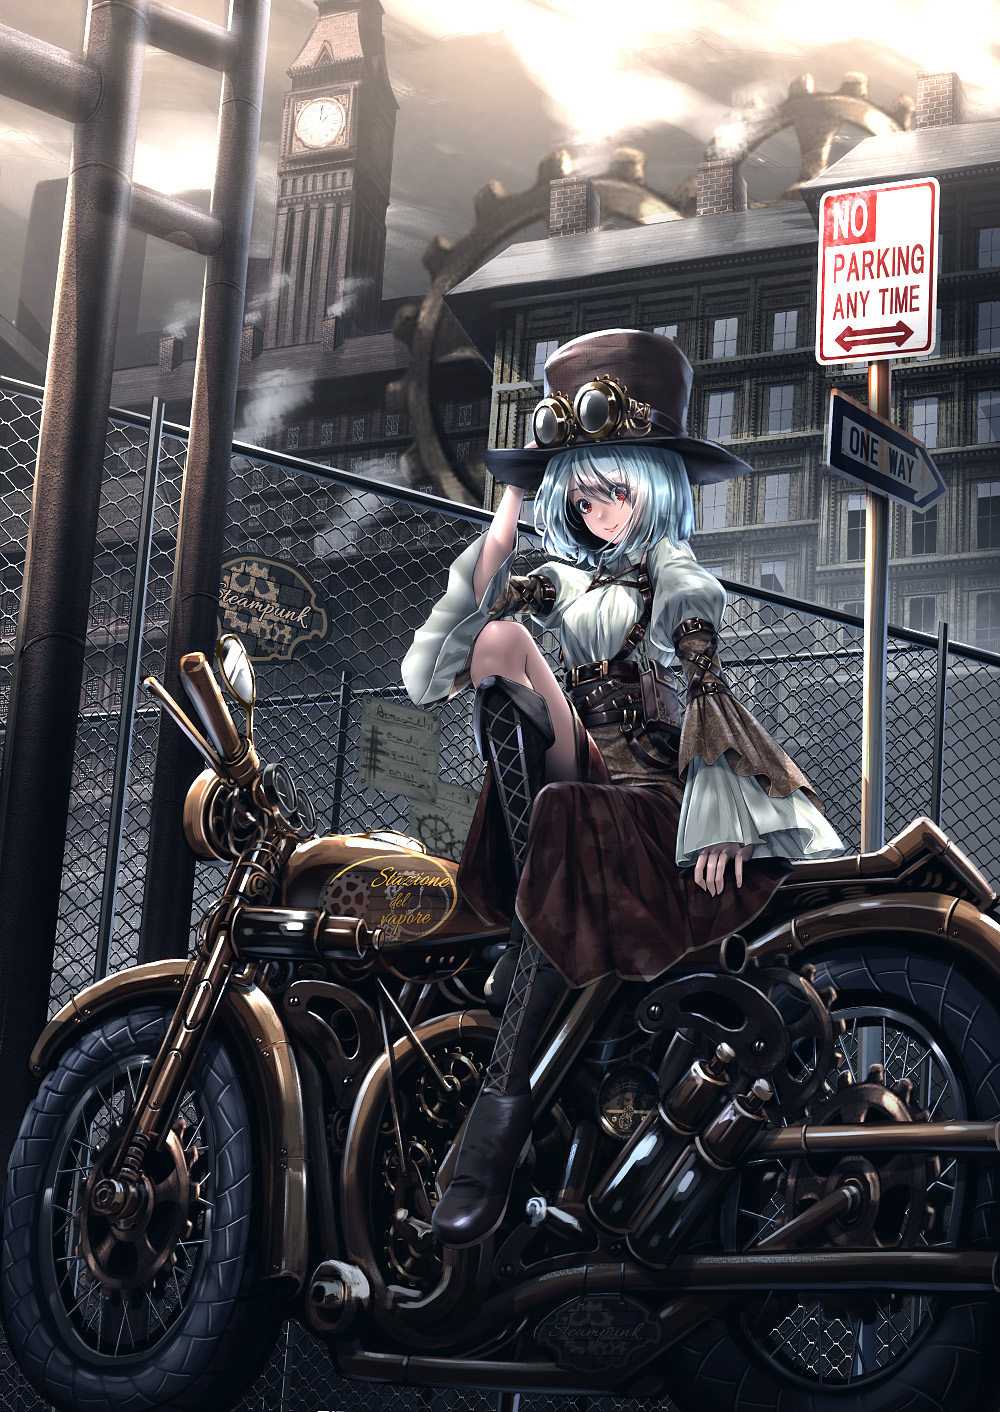 颯爽と駆け抜ける バイク女子 のイラスト集の画像 10 Baikuzyo